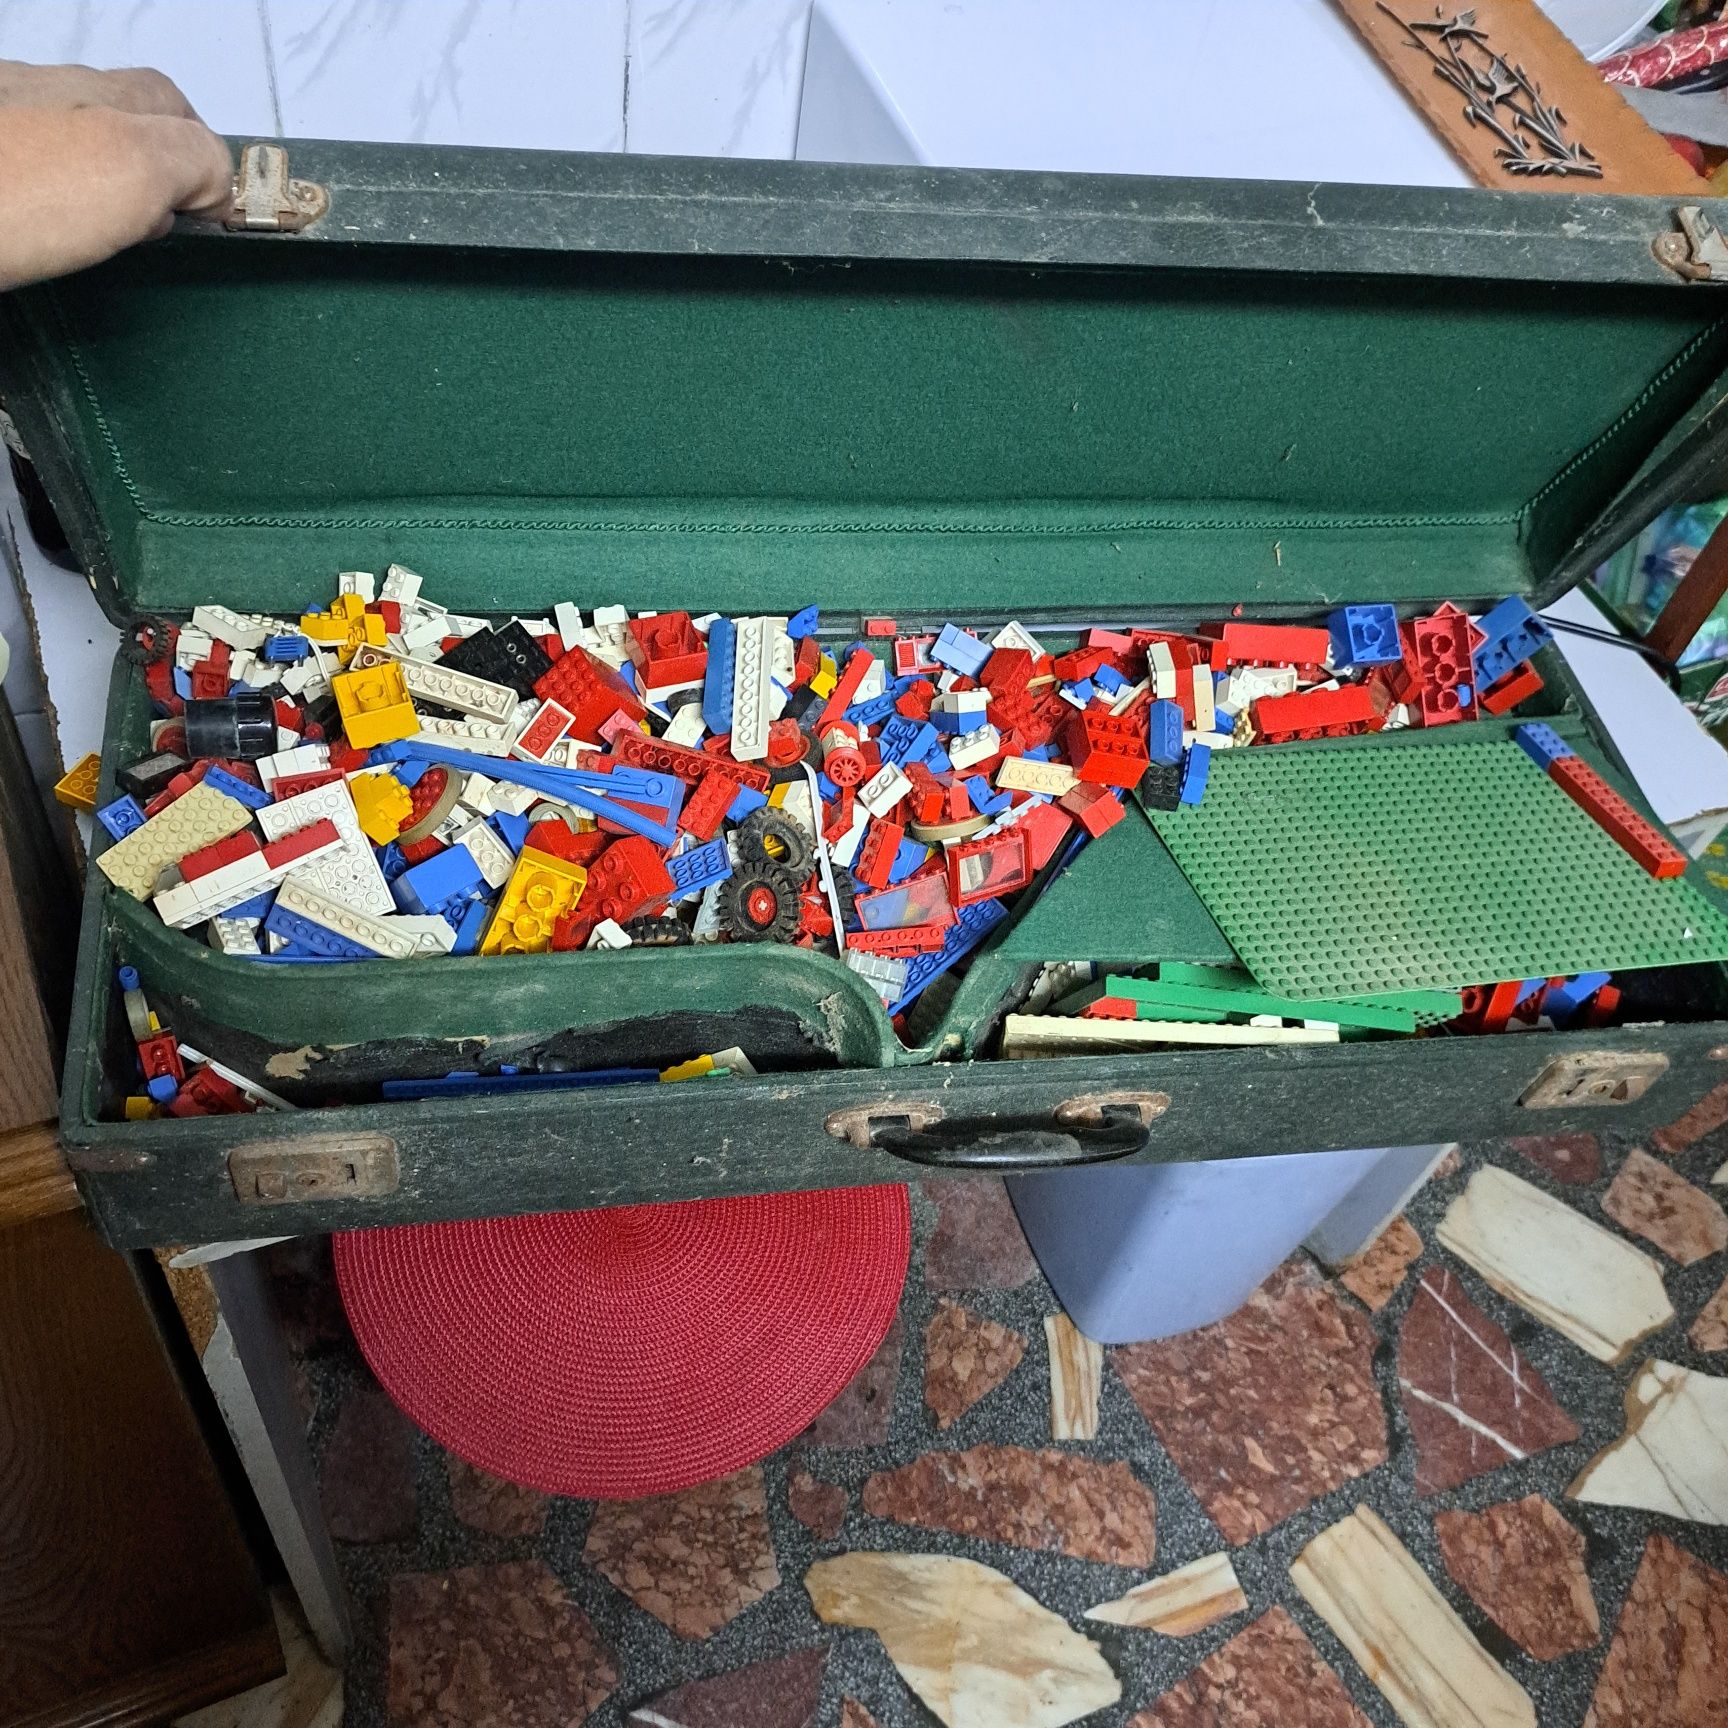 Lego.Lego.Lego..